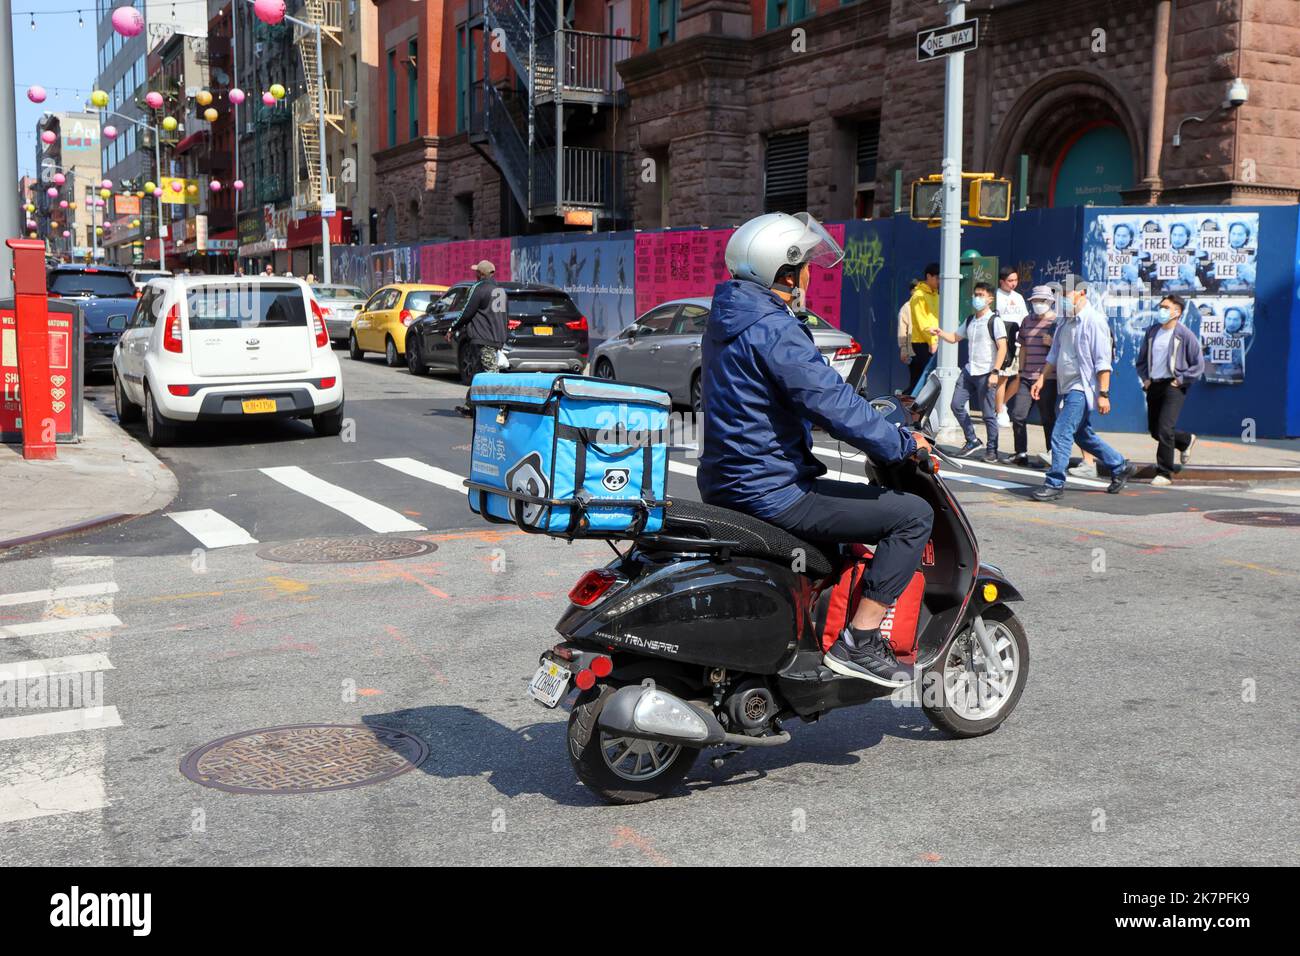 Una persona che consegna cibo HungryPanda su un ciclomotore a Manhattan Chinatown, New York, settembre 2022. Panda affamata 熊貓外賣 consegna di cibo asiatico Foto Stock